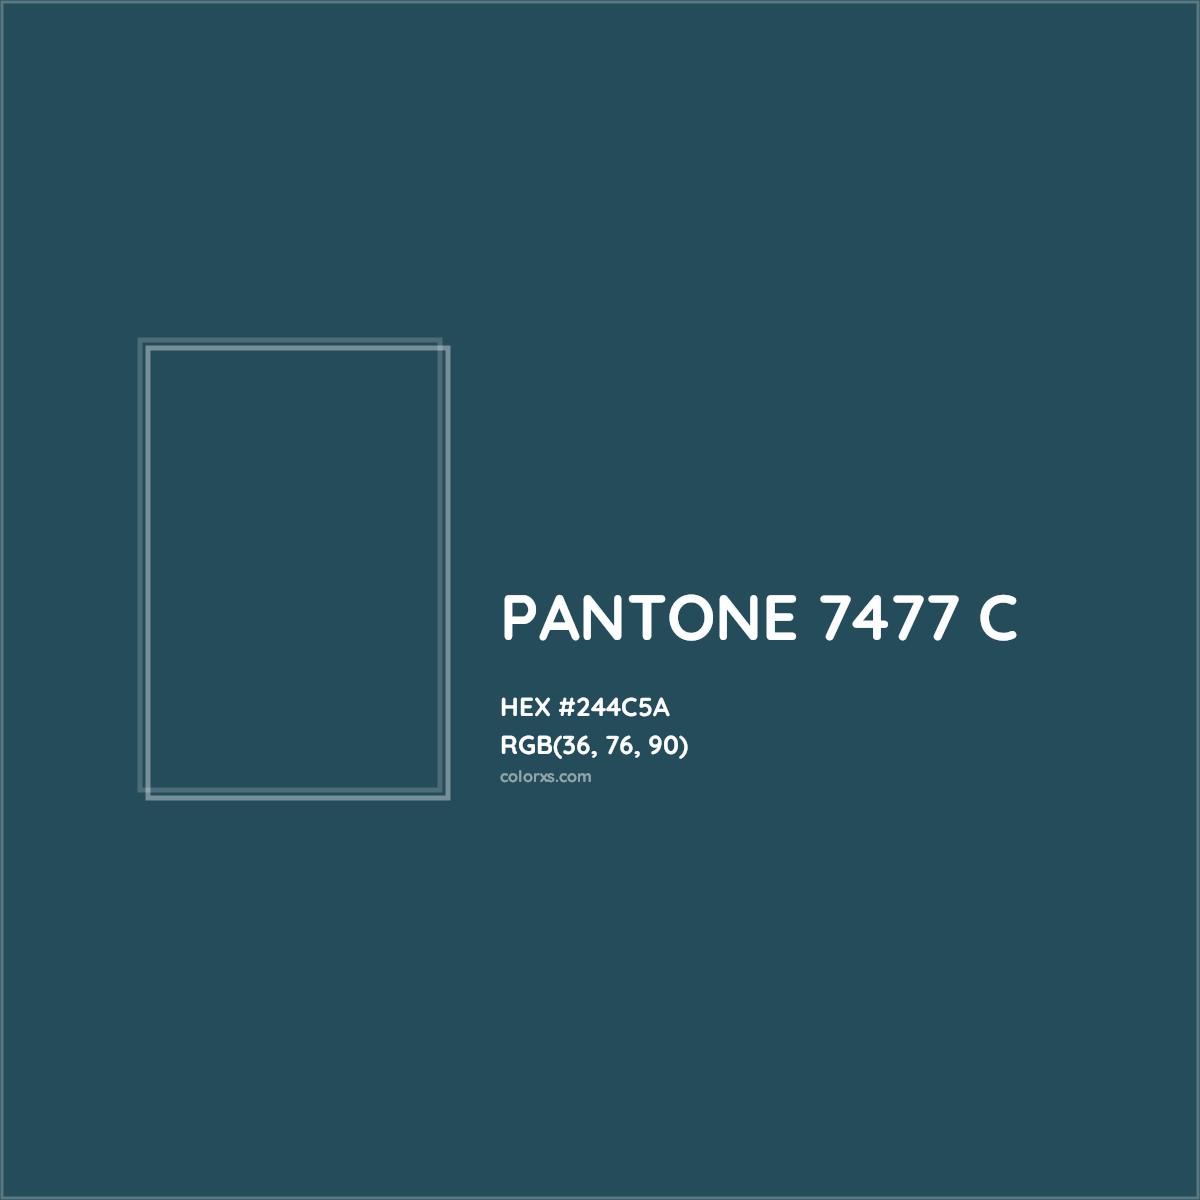 HEX #244C5A PANTONE 7477 C CMS Pantone PMS - Color Code